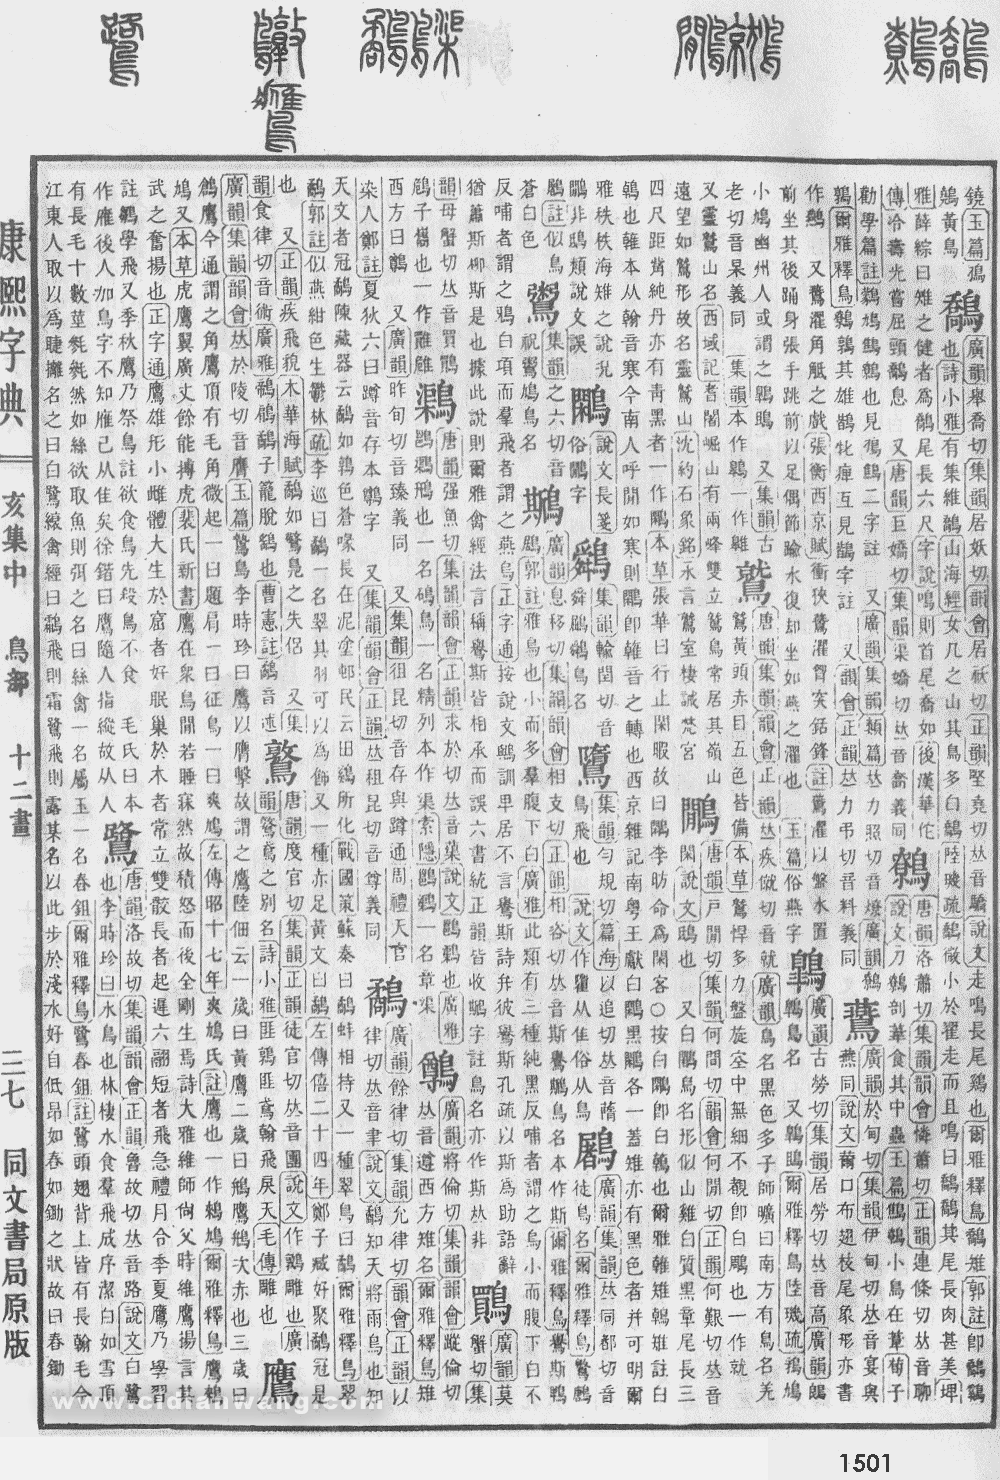 康熙字典掃描版第1501頁